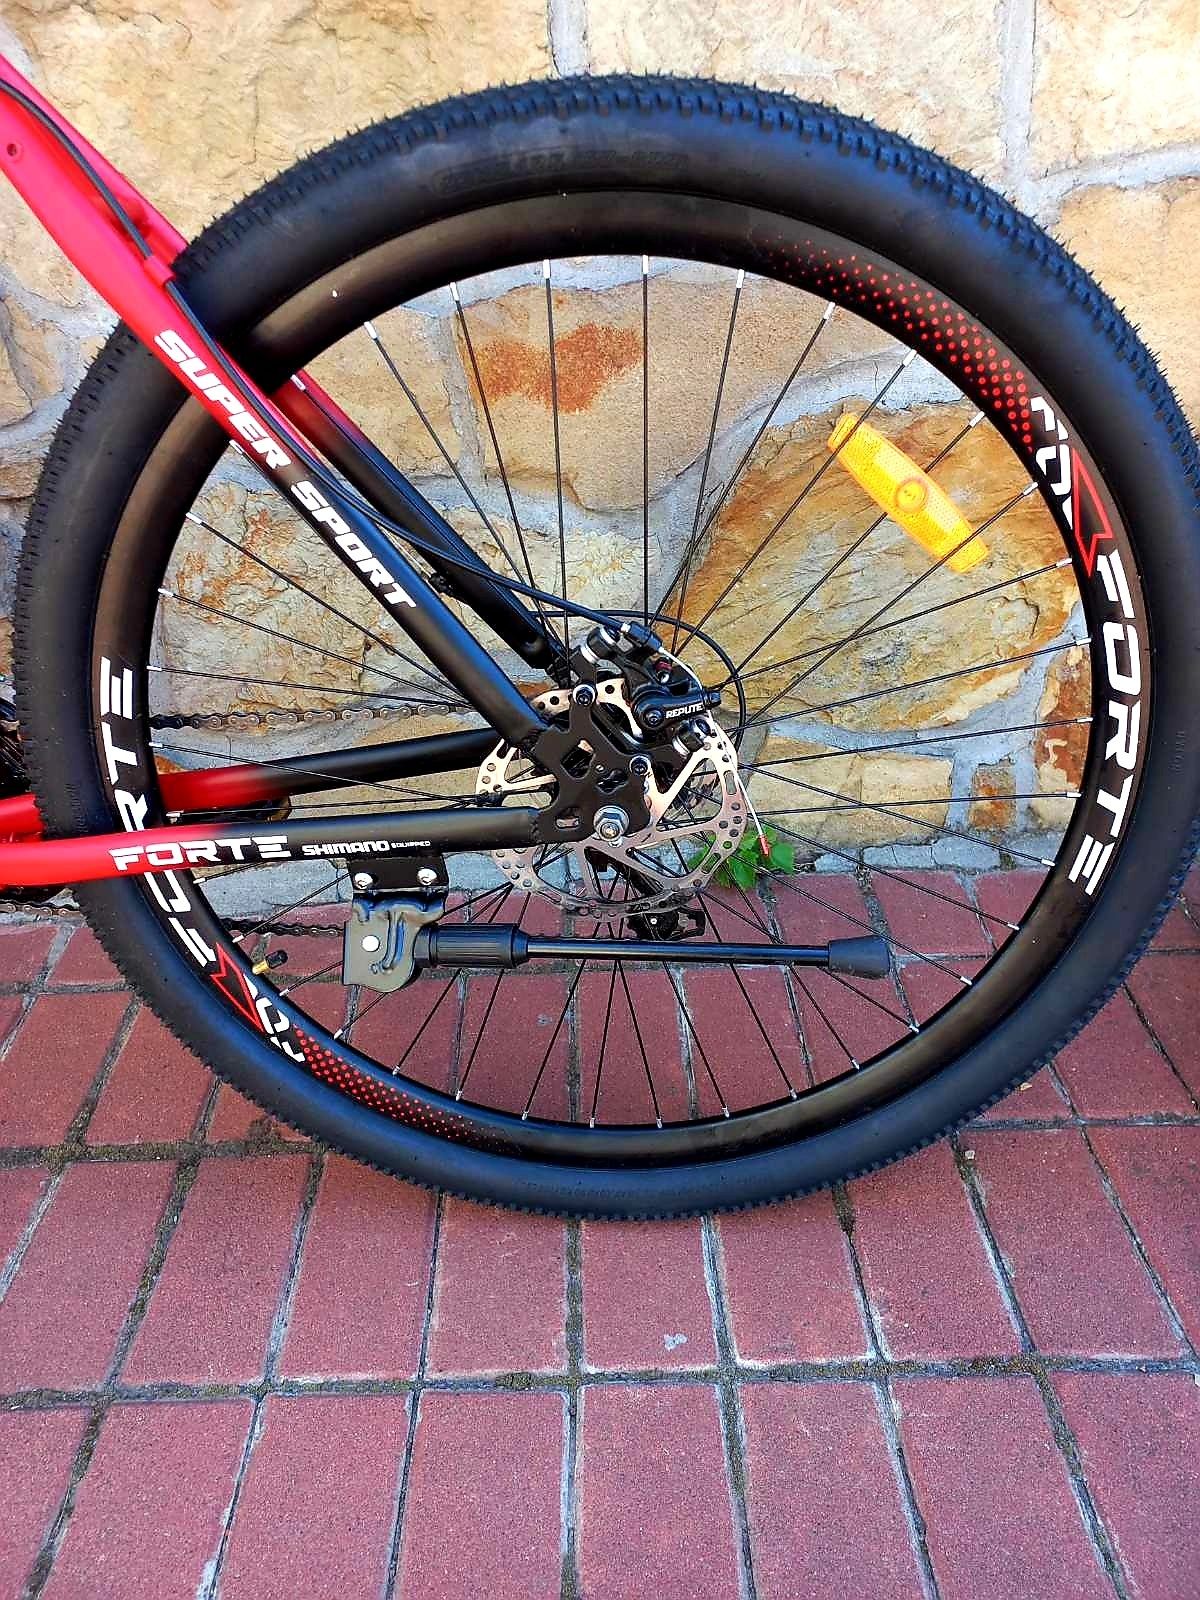 Велосипед Forte Braves 19'', 29'' (червоний)